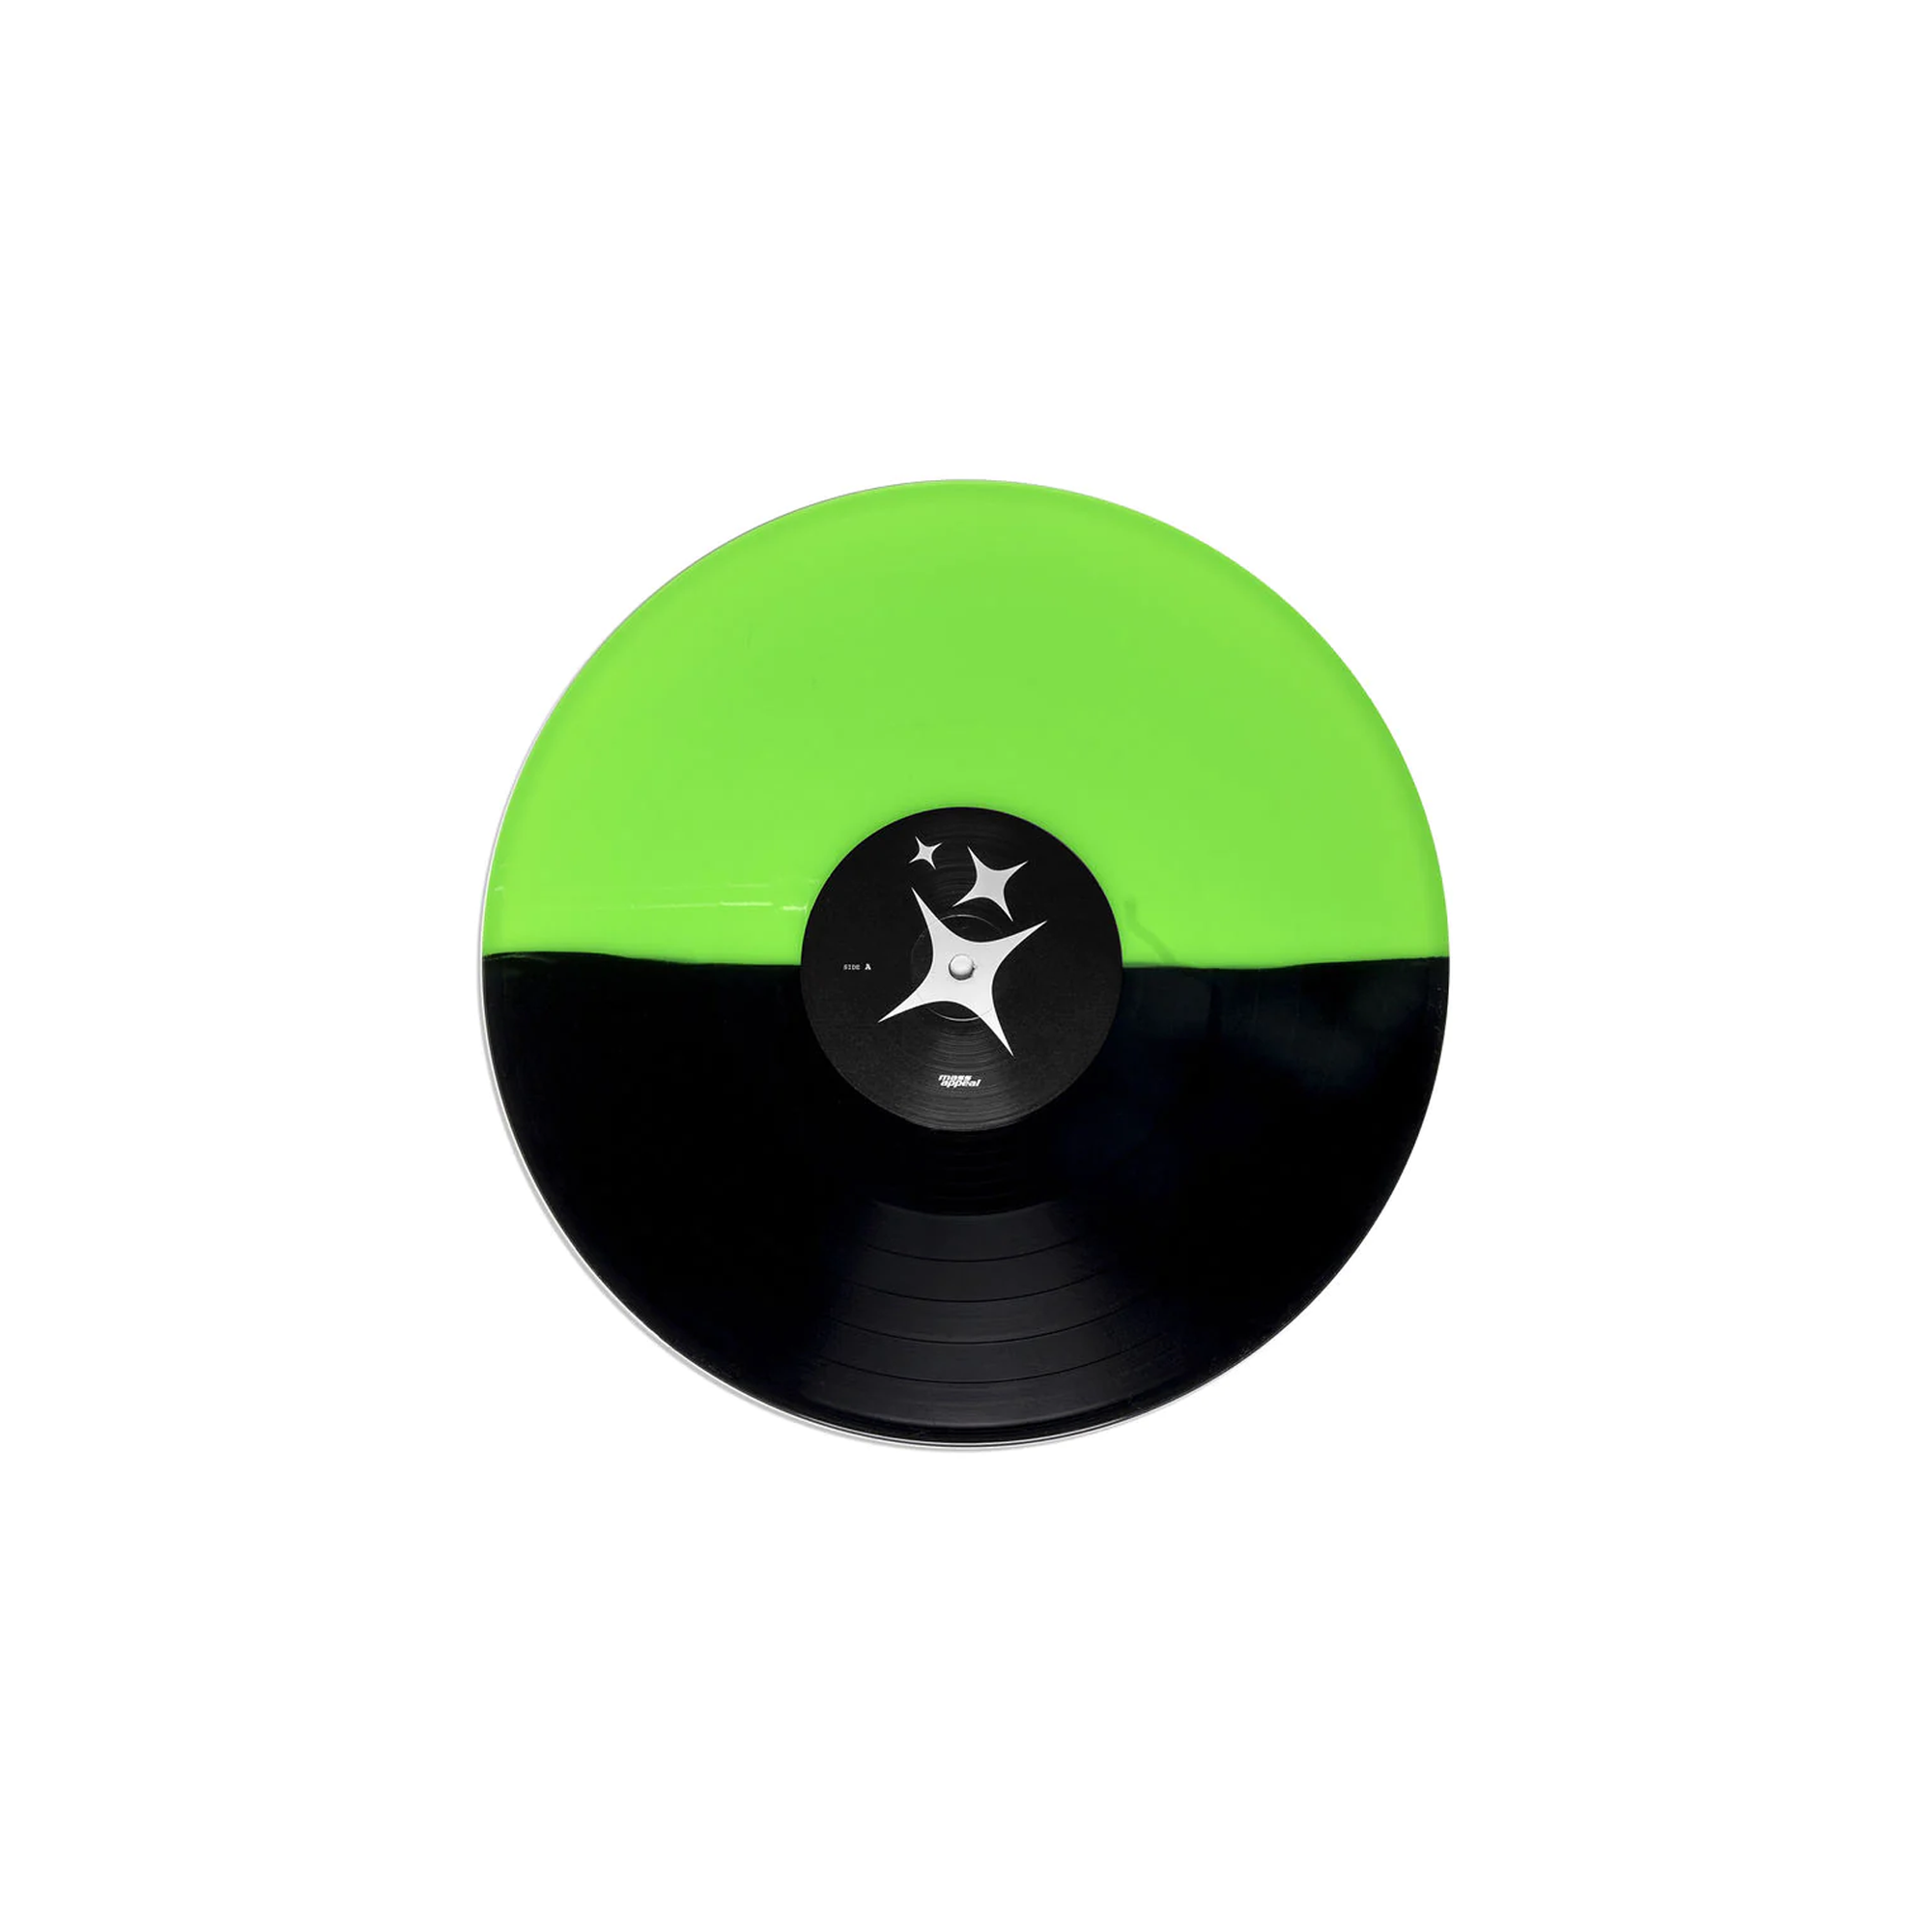 Nas “Magic” Green/Black Half & Half Color Vinyl LP (Now Shipping!) –  shop.massappeal